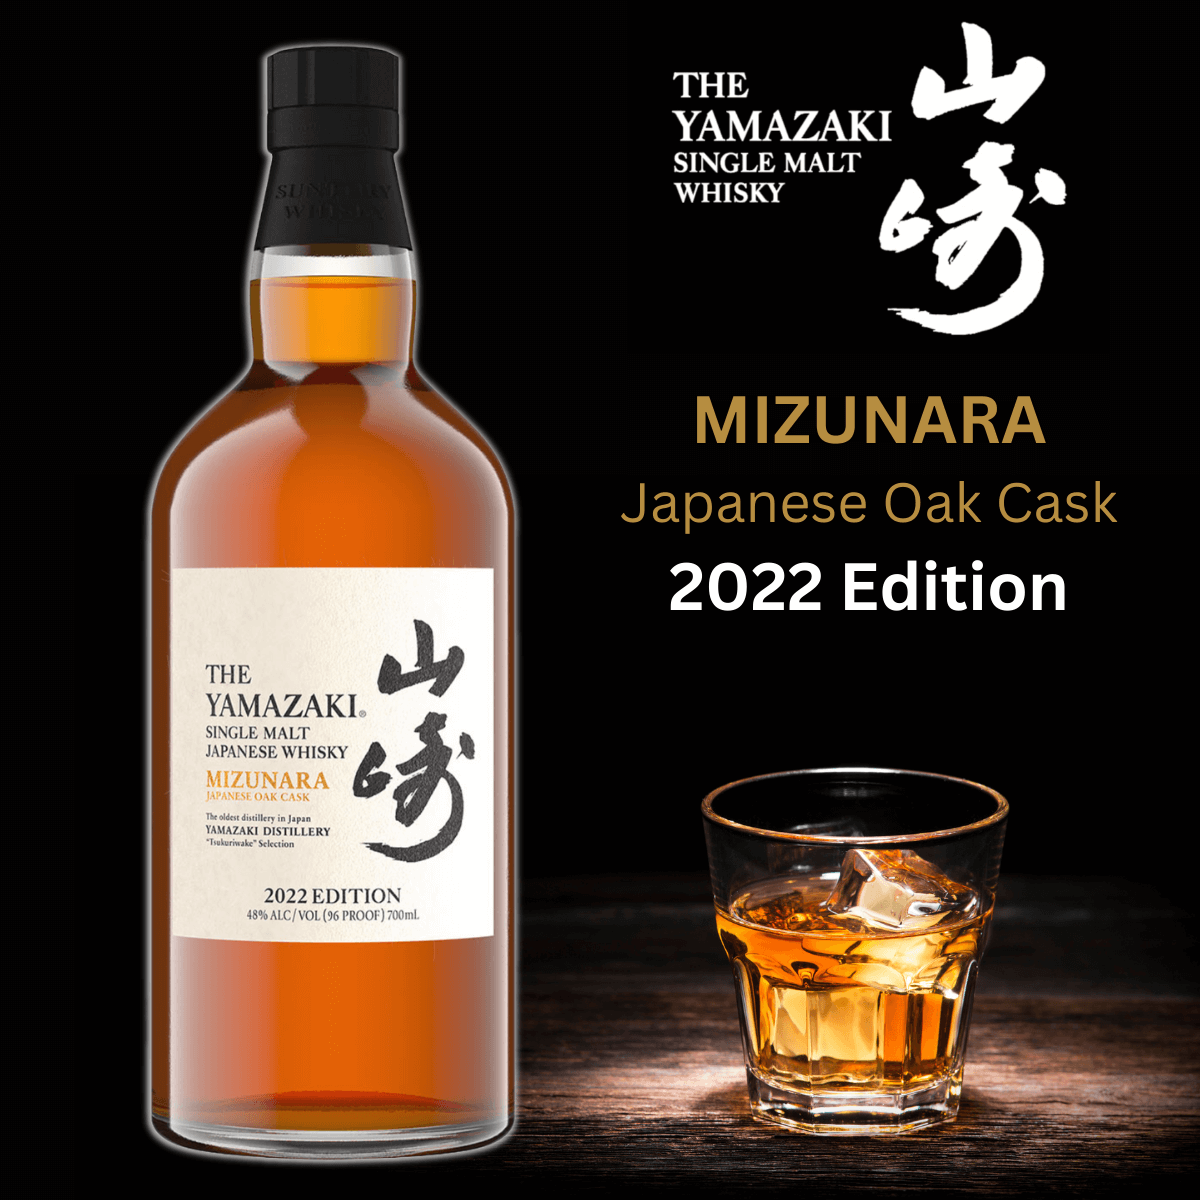 Dieser außergewöhnliche Mizunara-Eiche Whisky von Yamazaki entstammt der Yamazaki Tsukuriwake Selection Limited Edition 2022